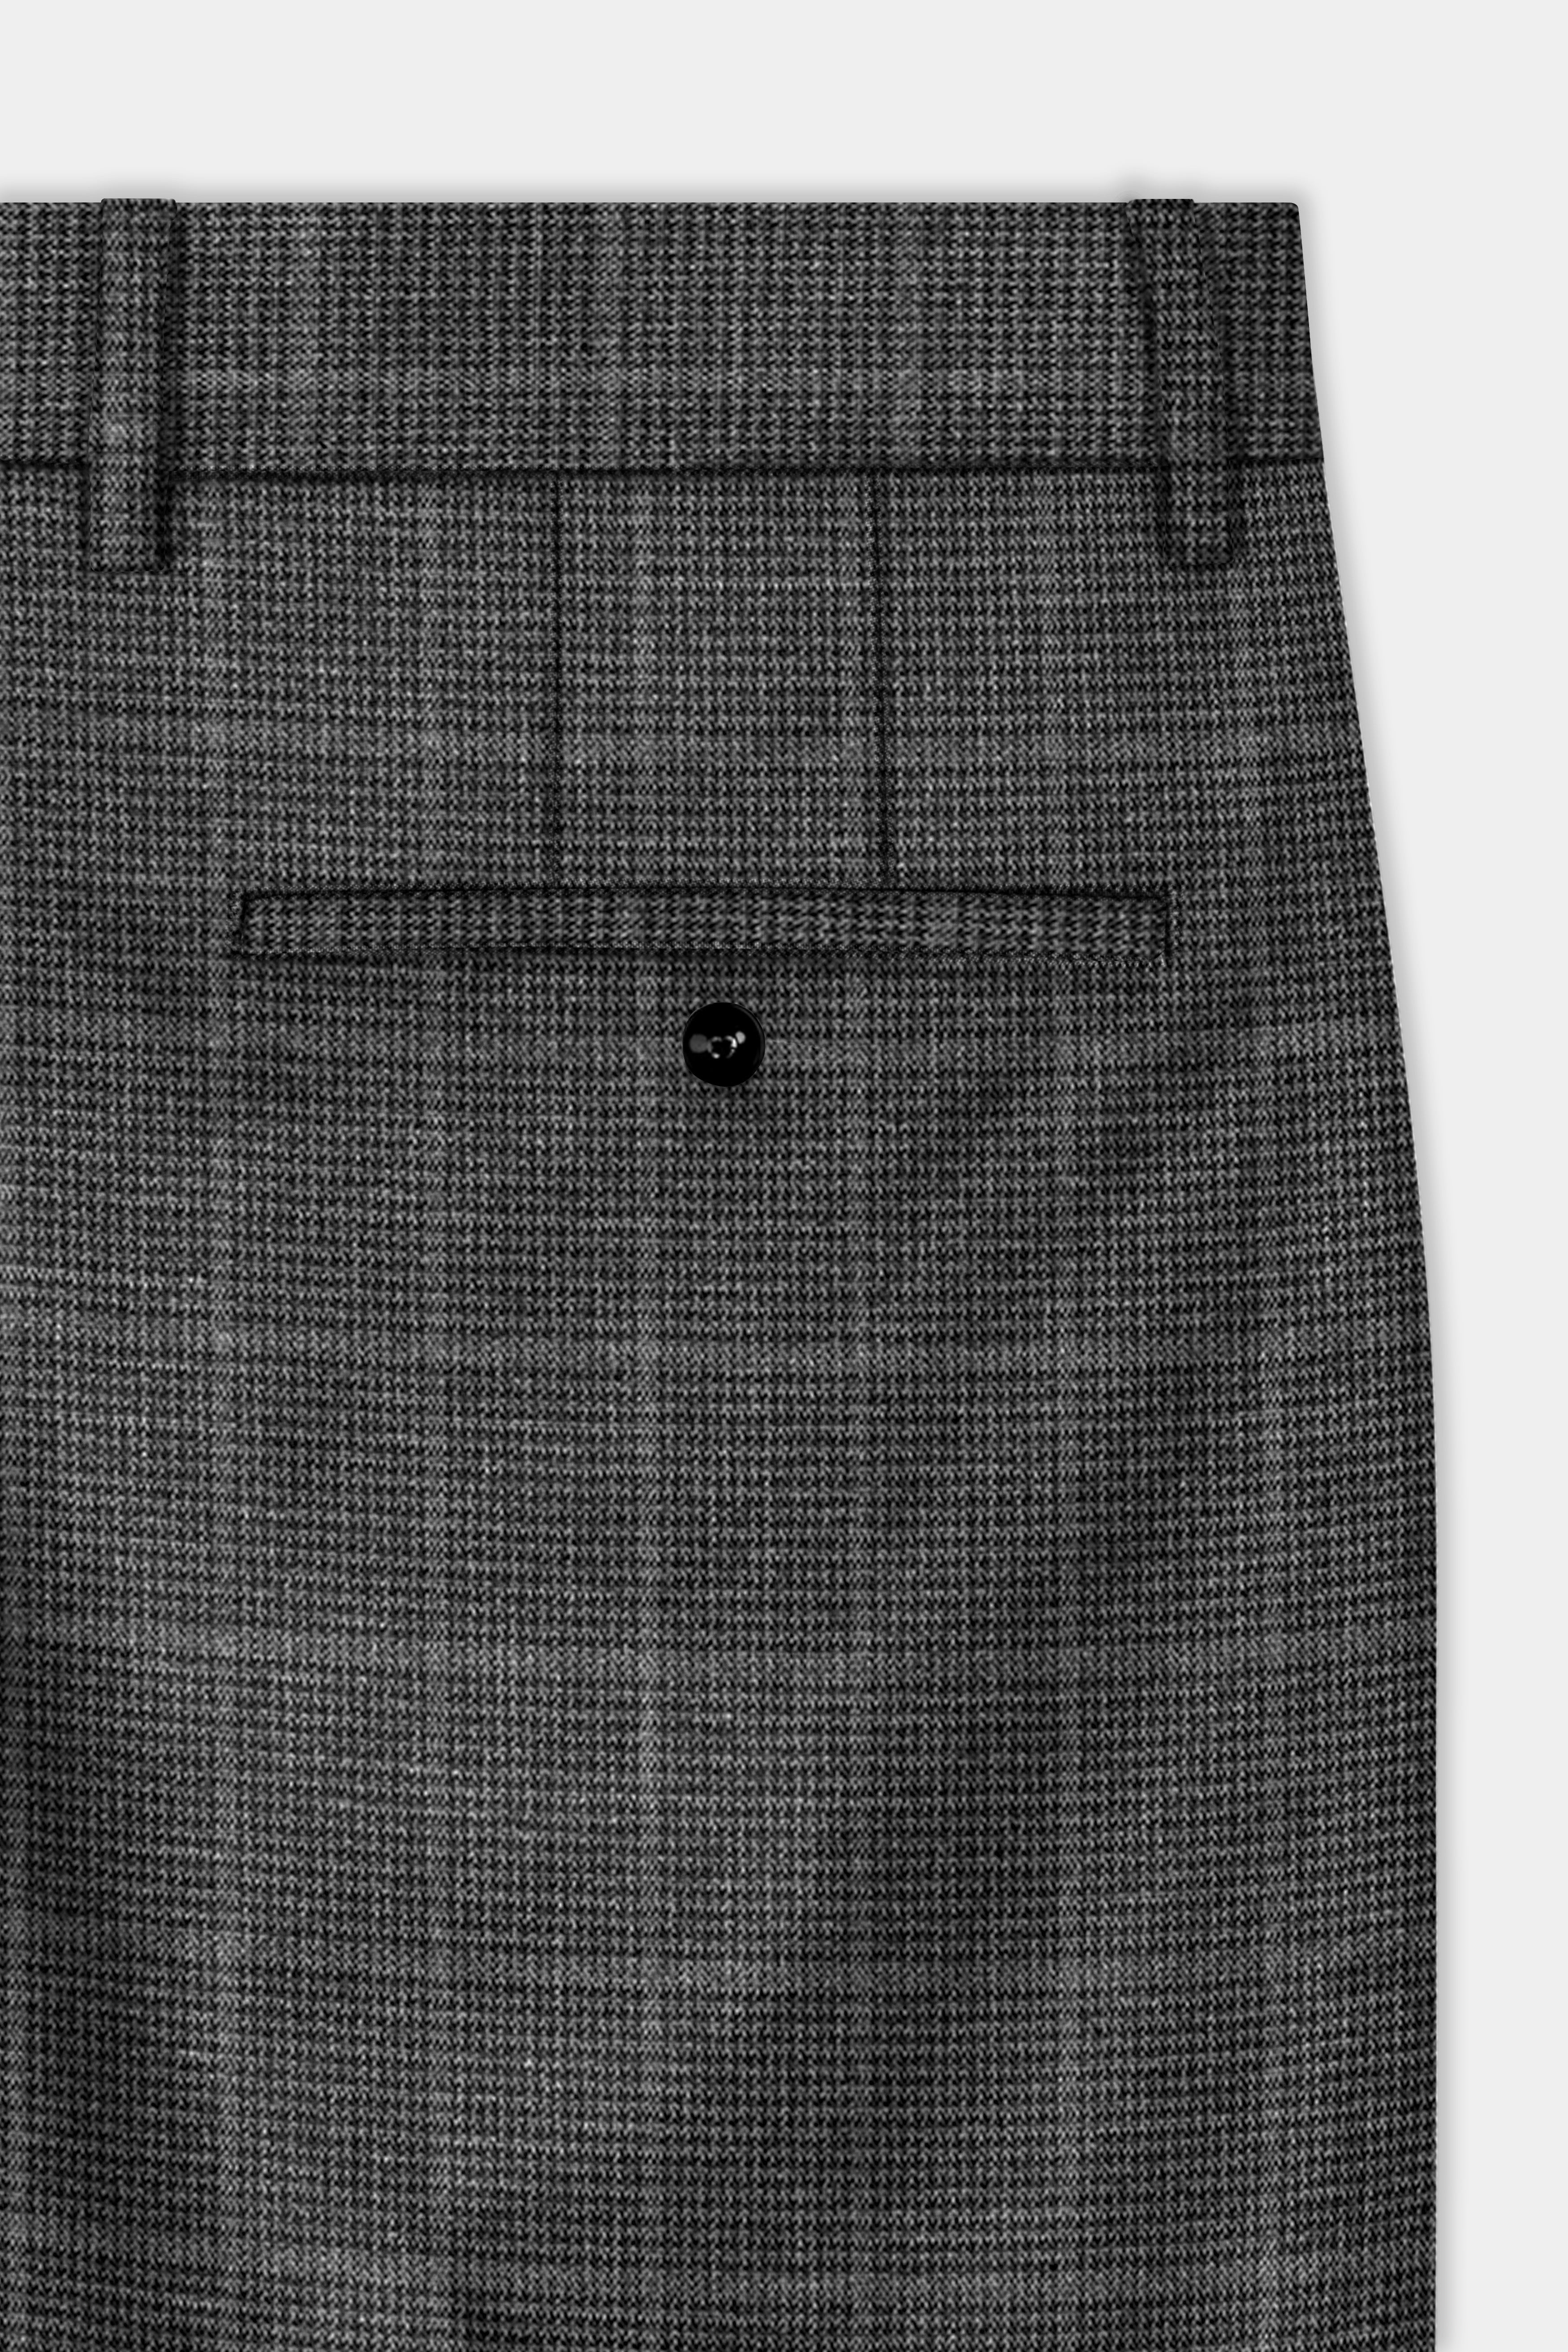 Iridium Gray Plaid Wool Blend Single Breasted Suit